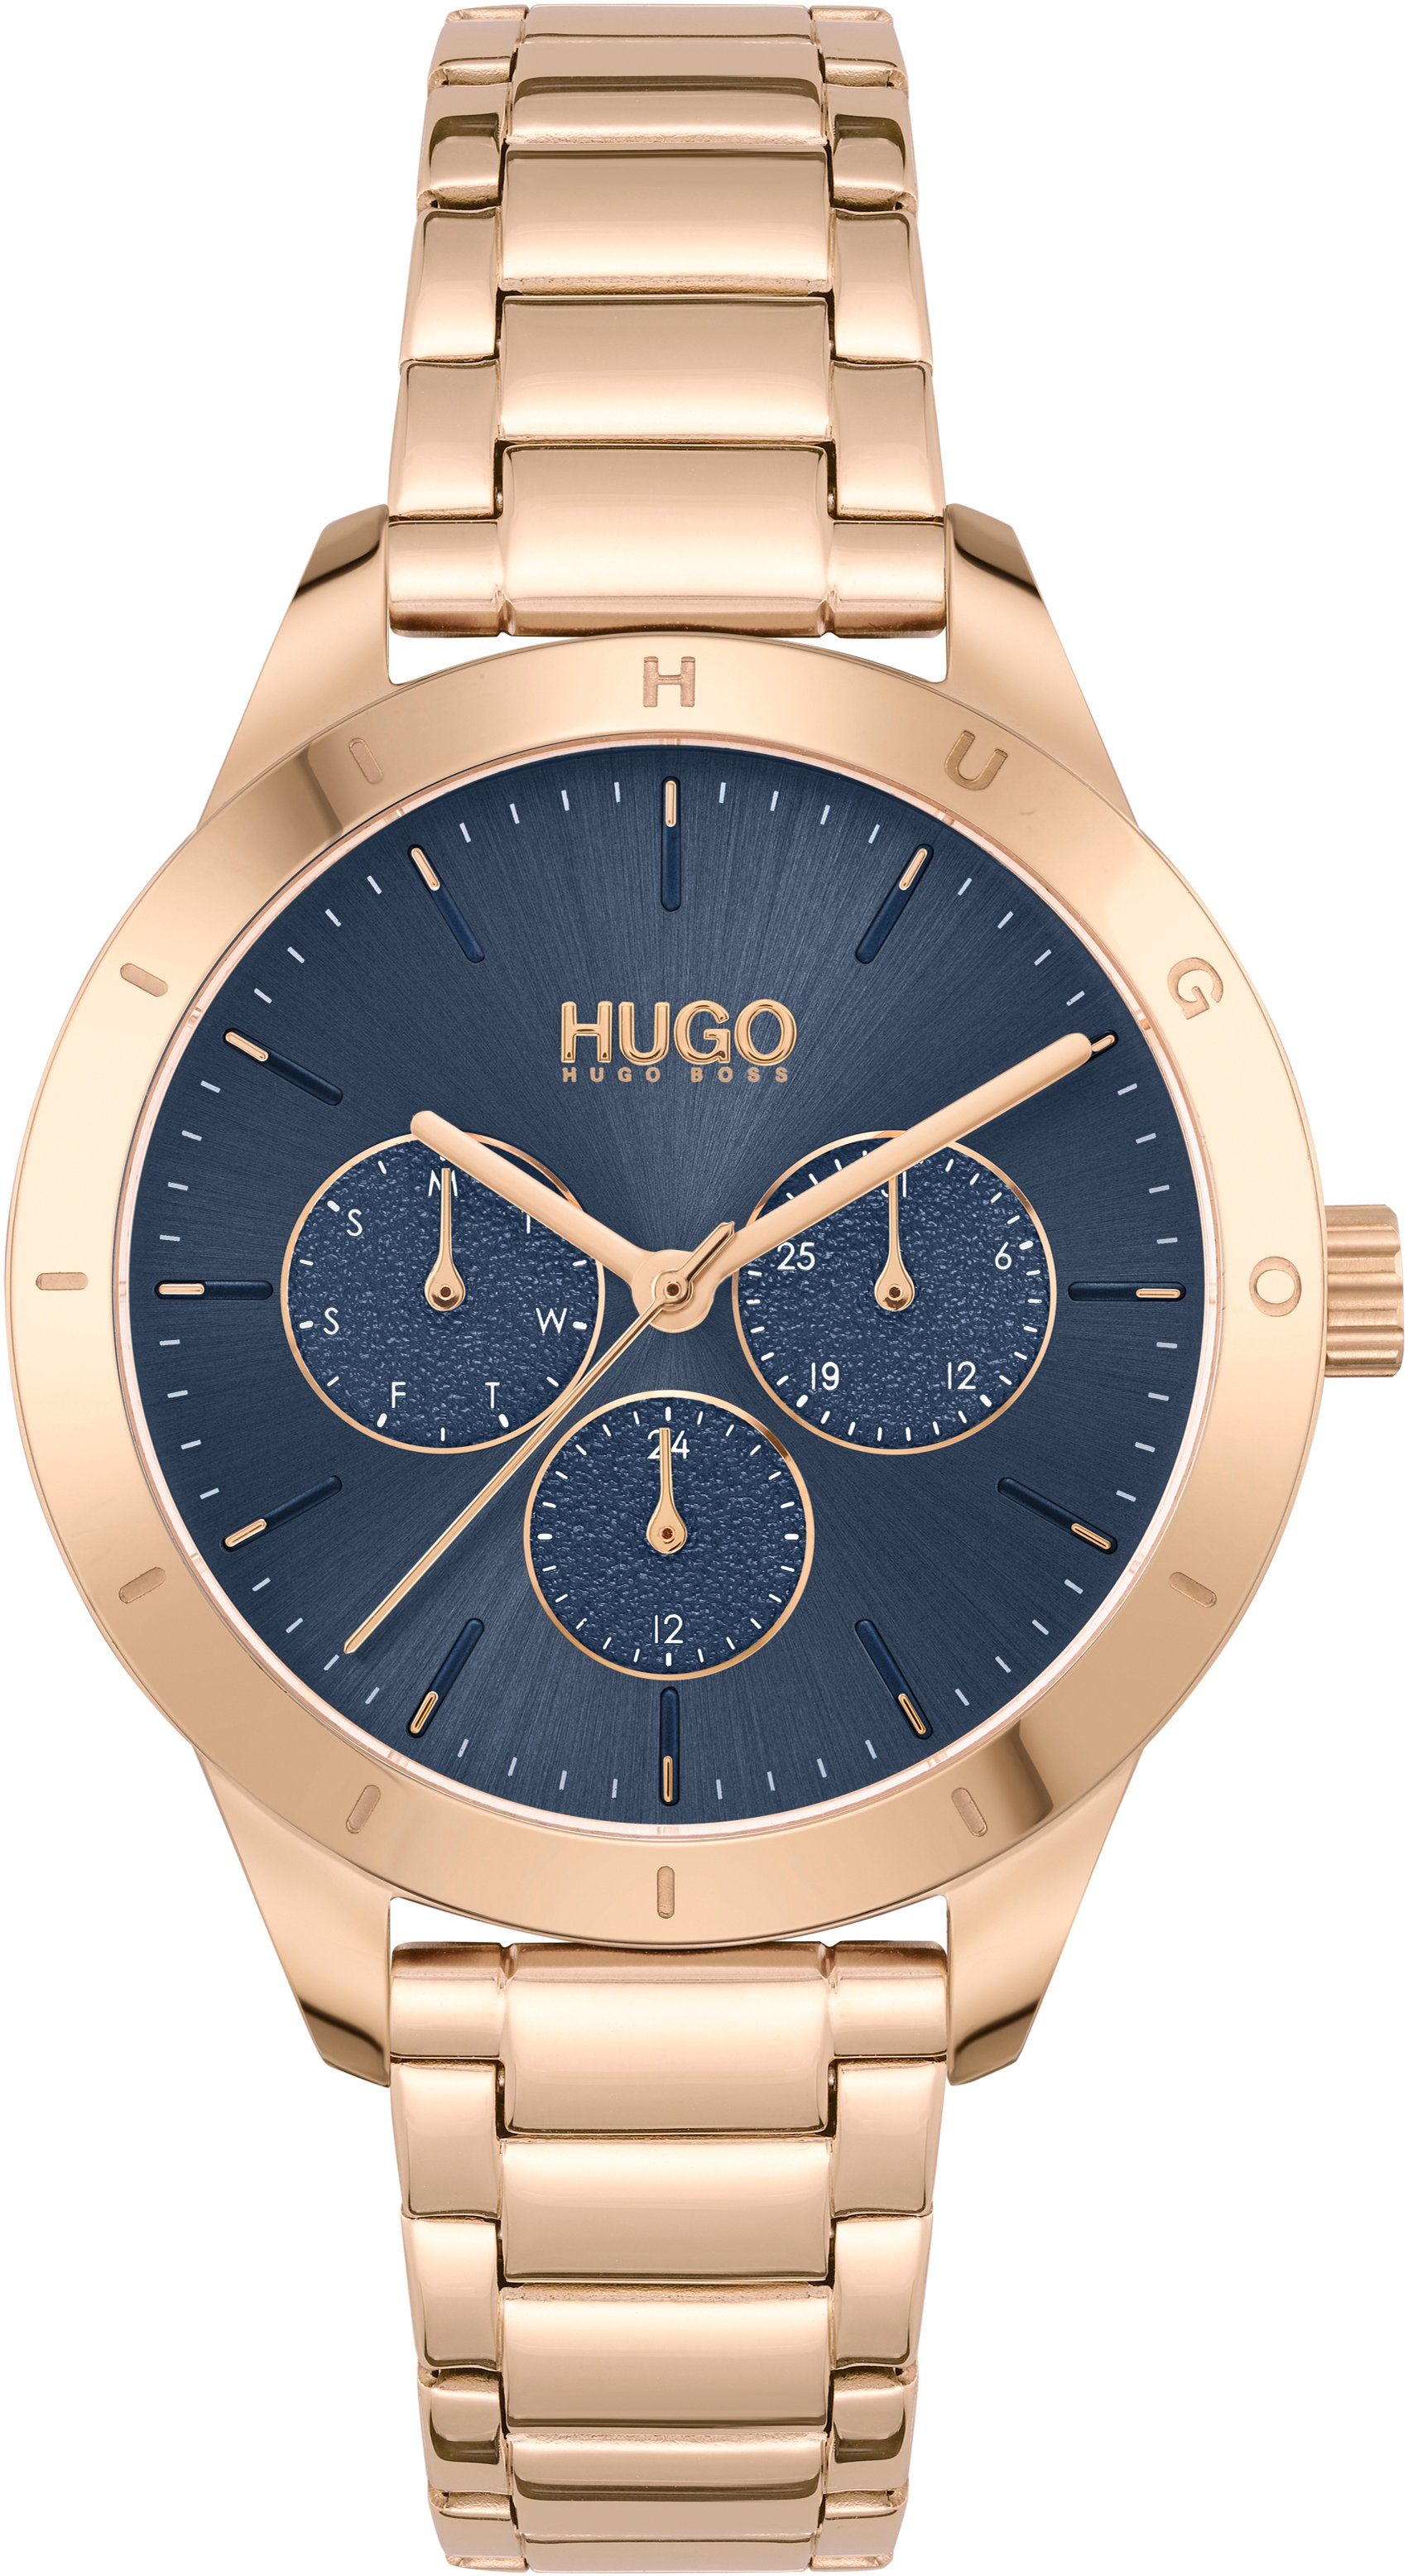 HUGO Multifunktionsuhr #FRIEND, 1540092, Quarzuhr, Armbanduhr, Damenuhr, Datum, 12/24-Stunden-Anzeige